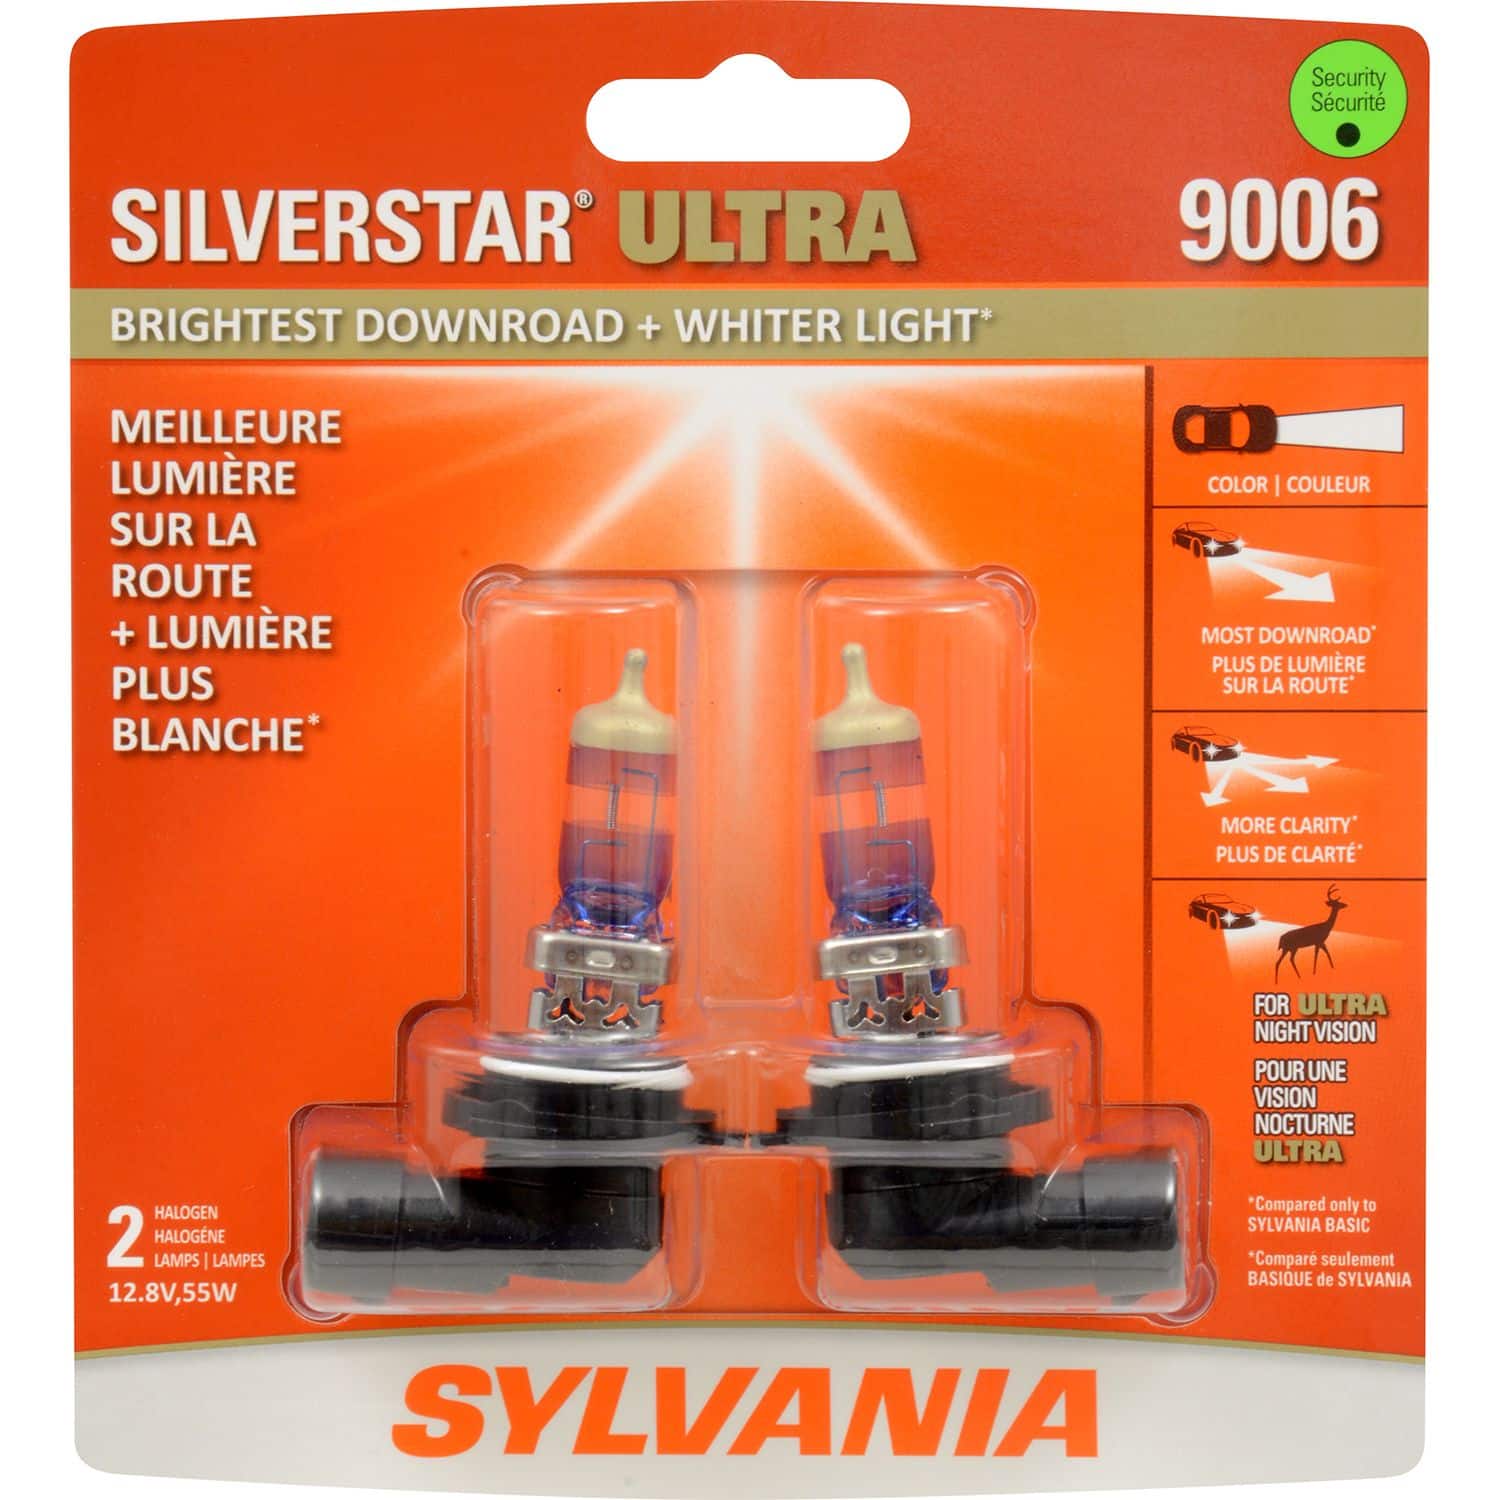 9006 Sylvania SilverStar® ULTRA Halogen Headlight Bulb, Whiter Light, 1-pk